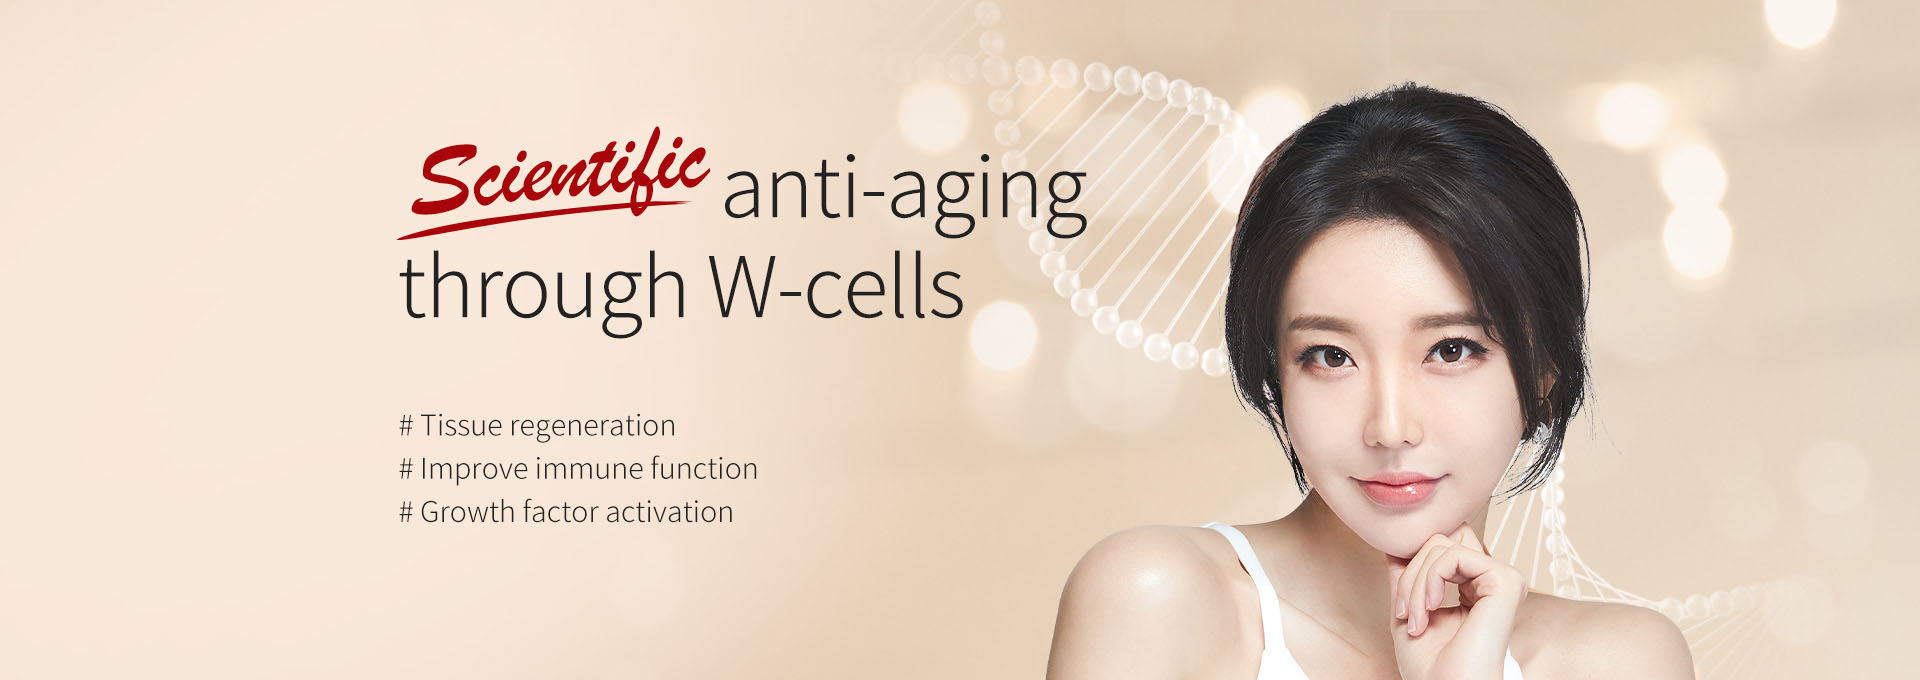 Scientific anti-aging through W-ells